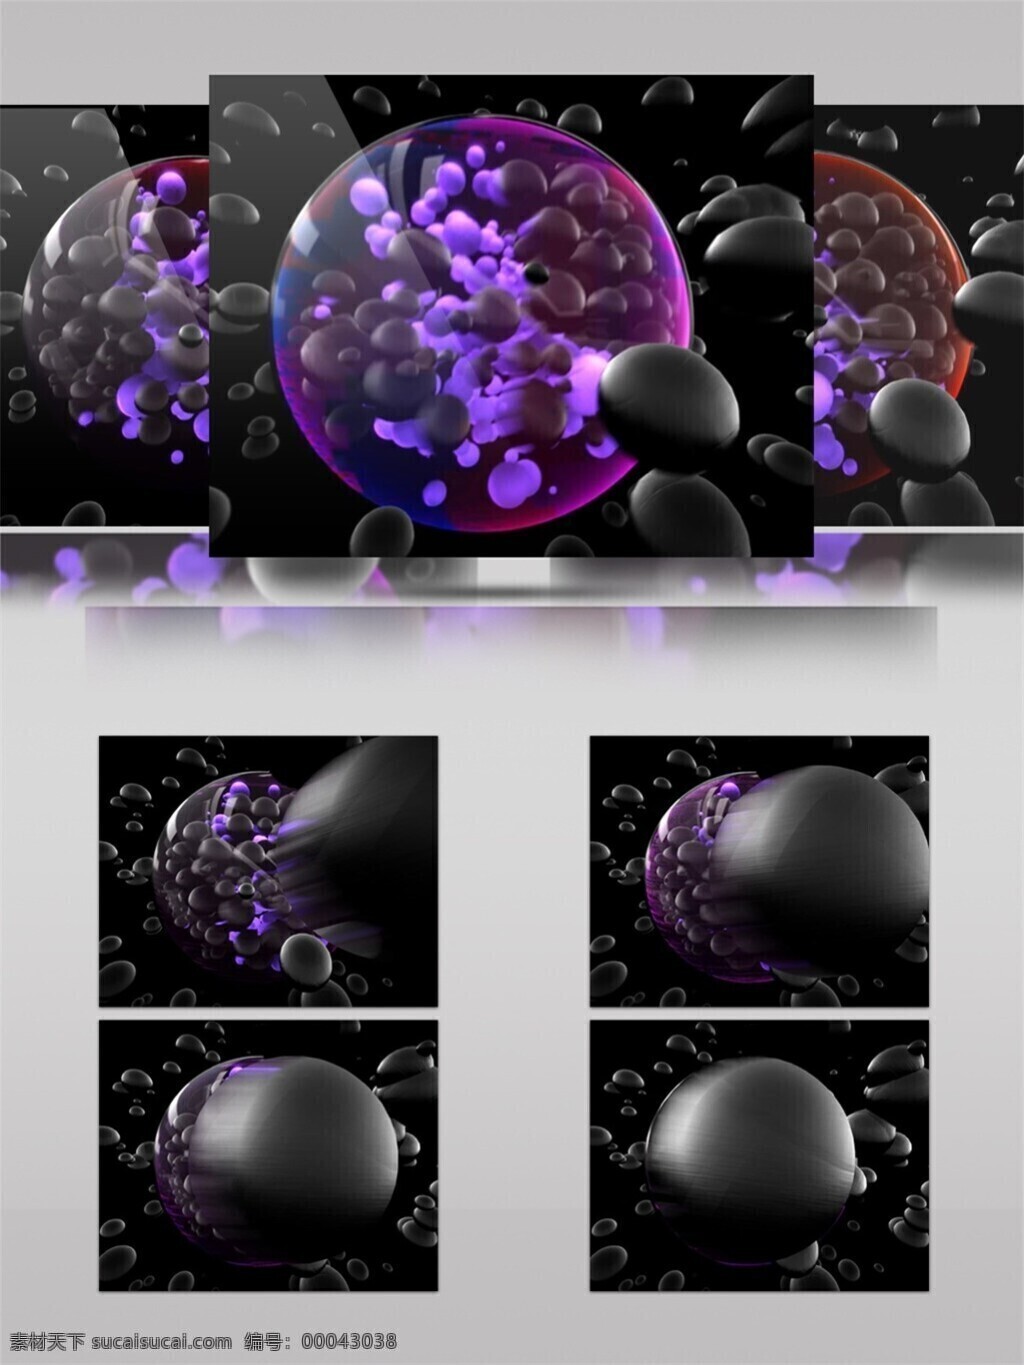 光斑散射 光球 激光 视觉享受 手机壁纸 星束 紫色 光束 气泡 视频